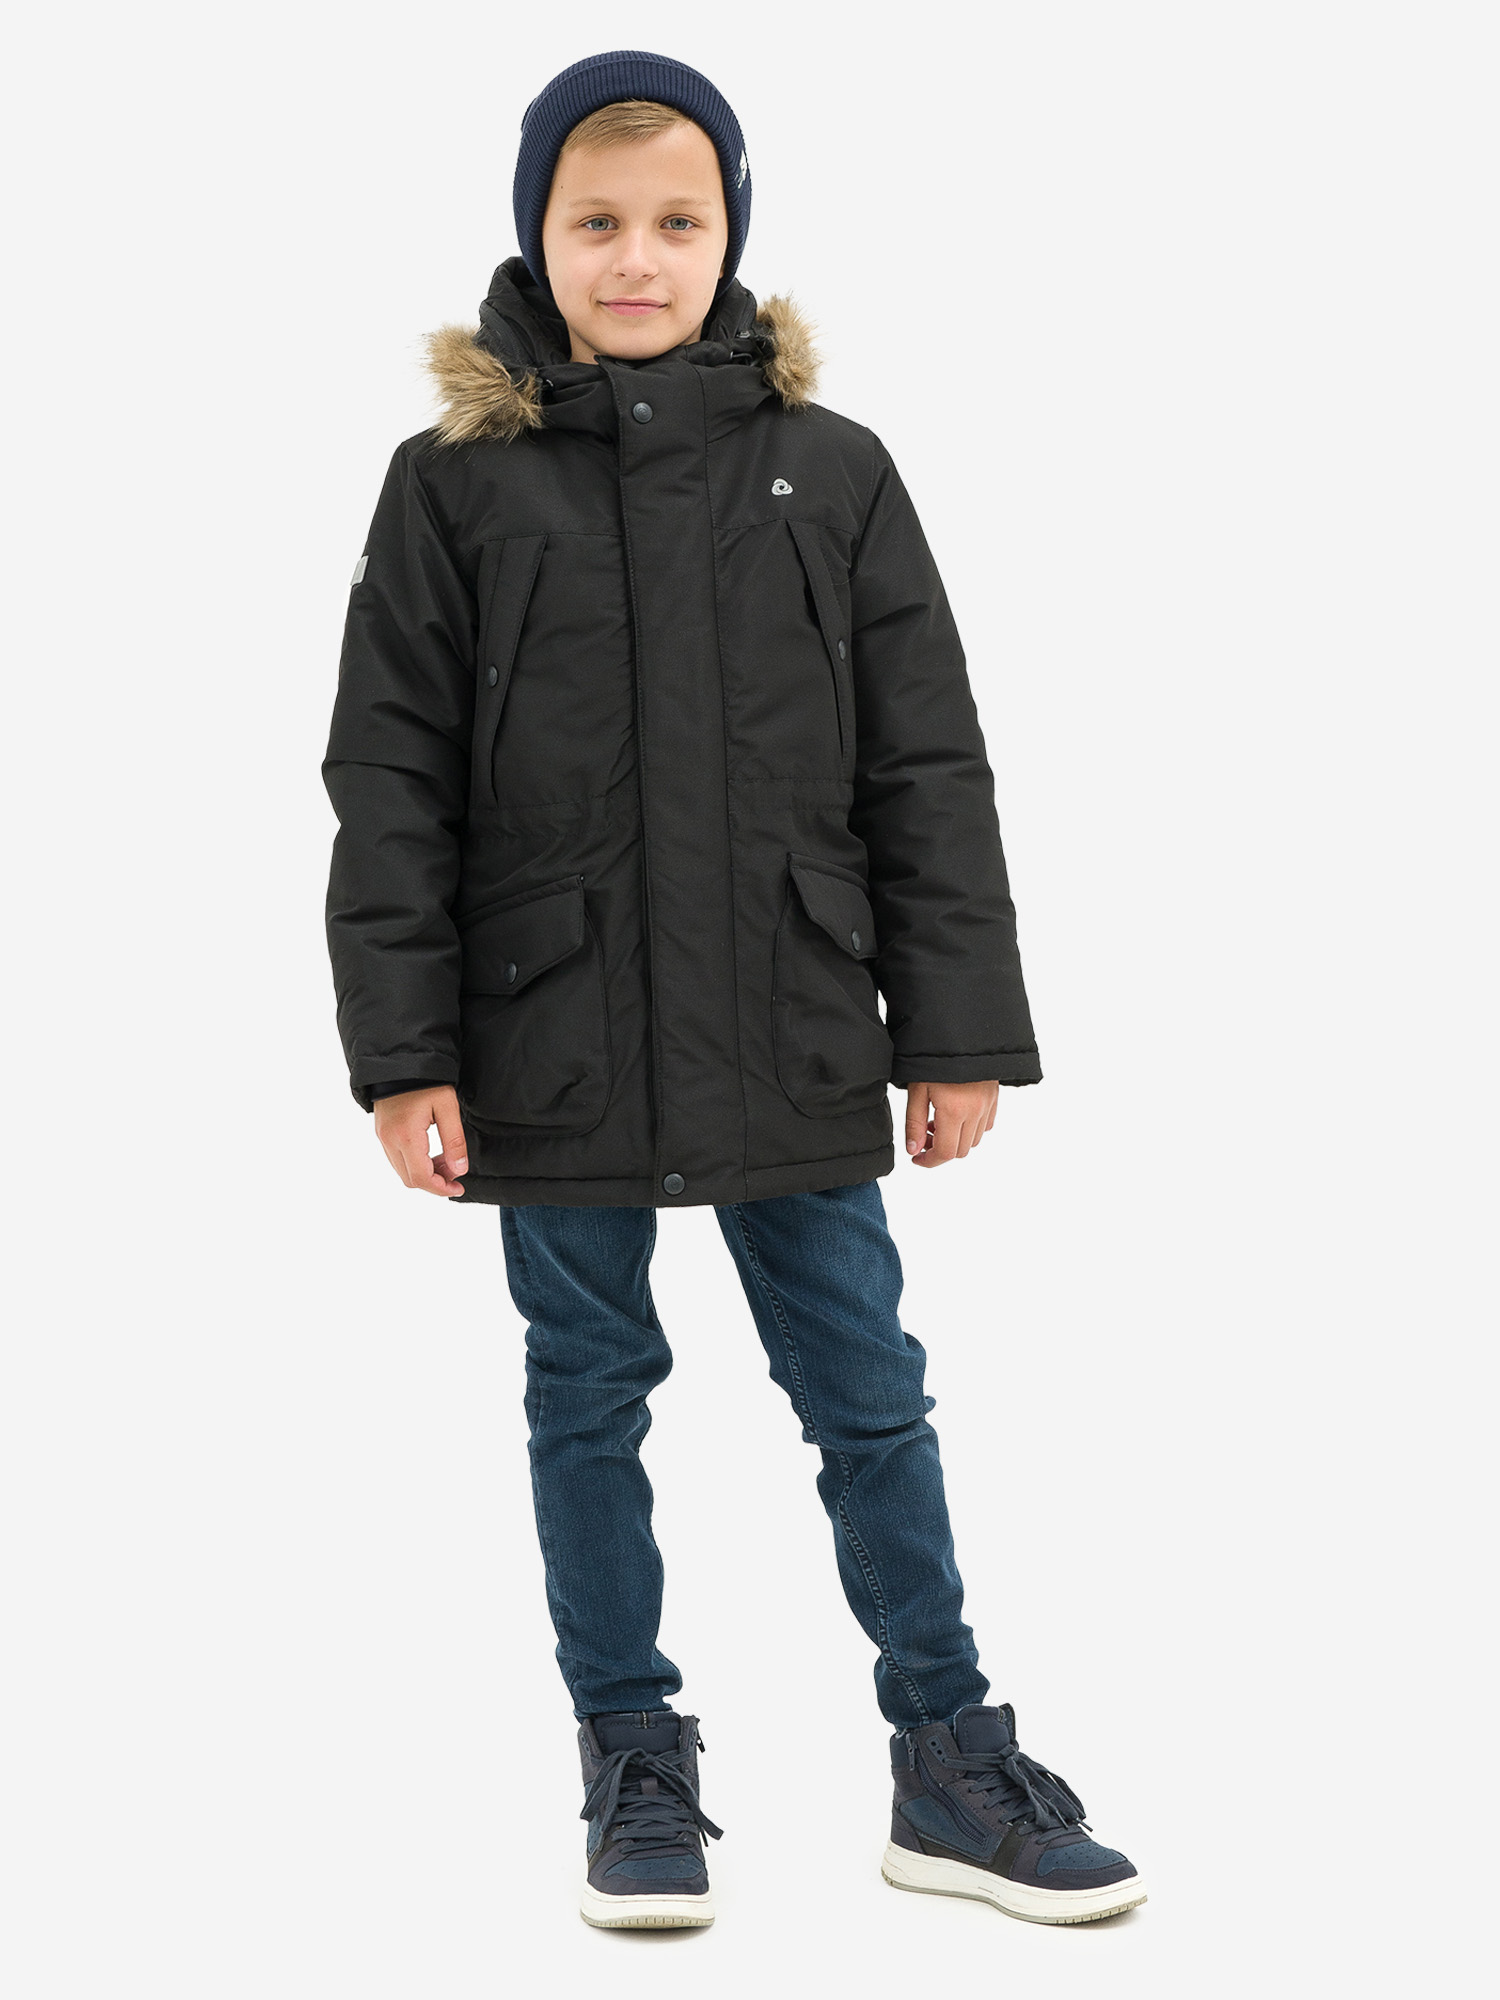 Куртка детская зимняя CosmoTex, Черный valianly парка зимняя подростковая для мальчика 9339